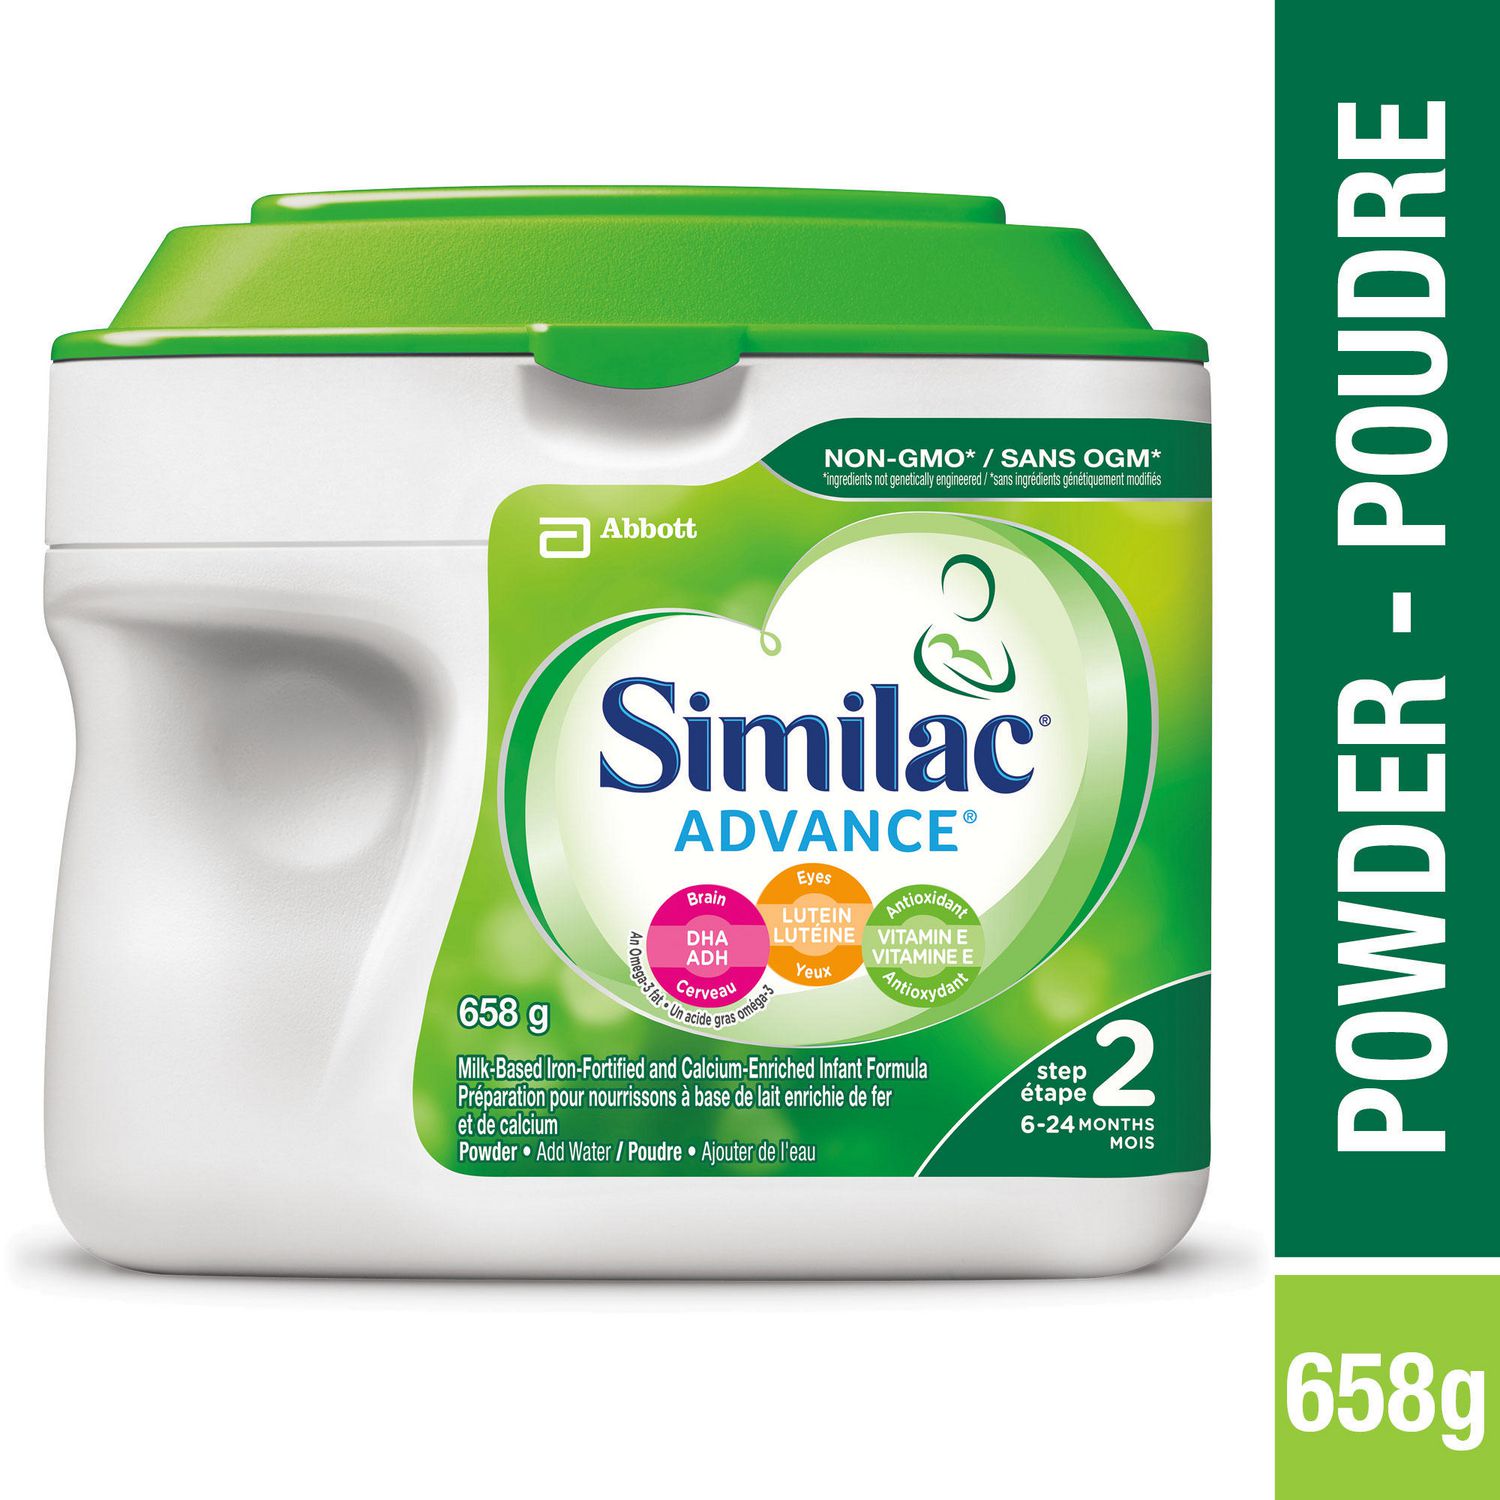 similac 2 milk powder